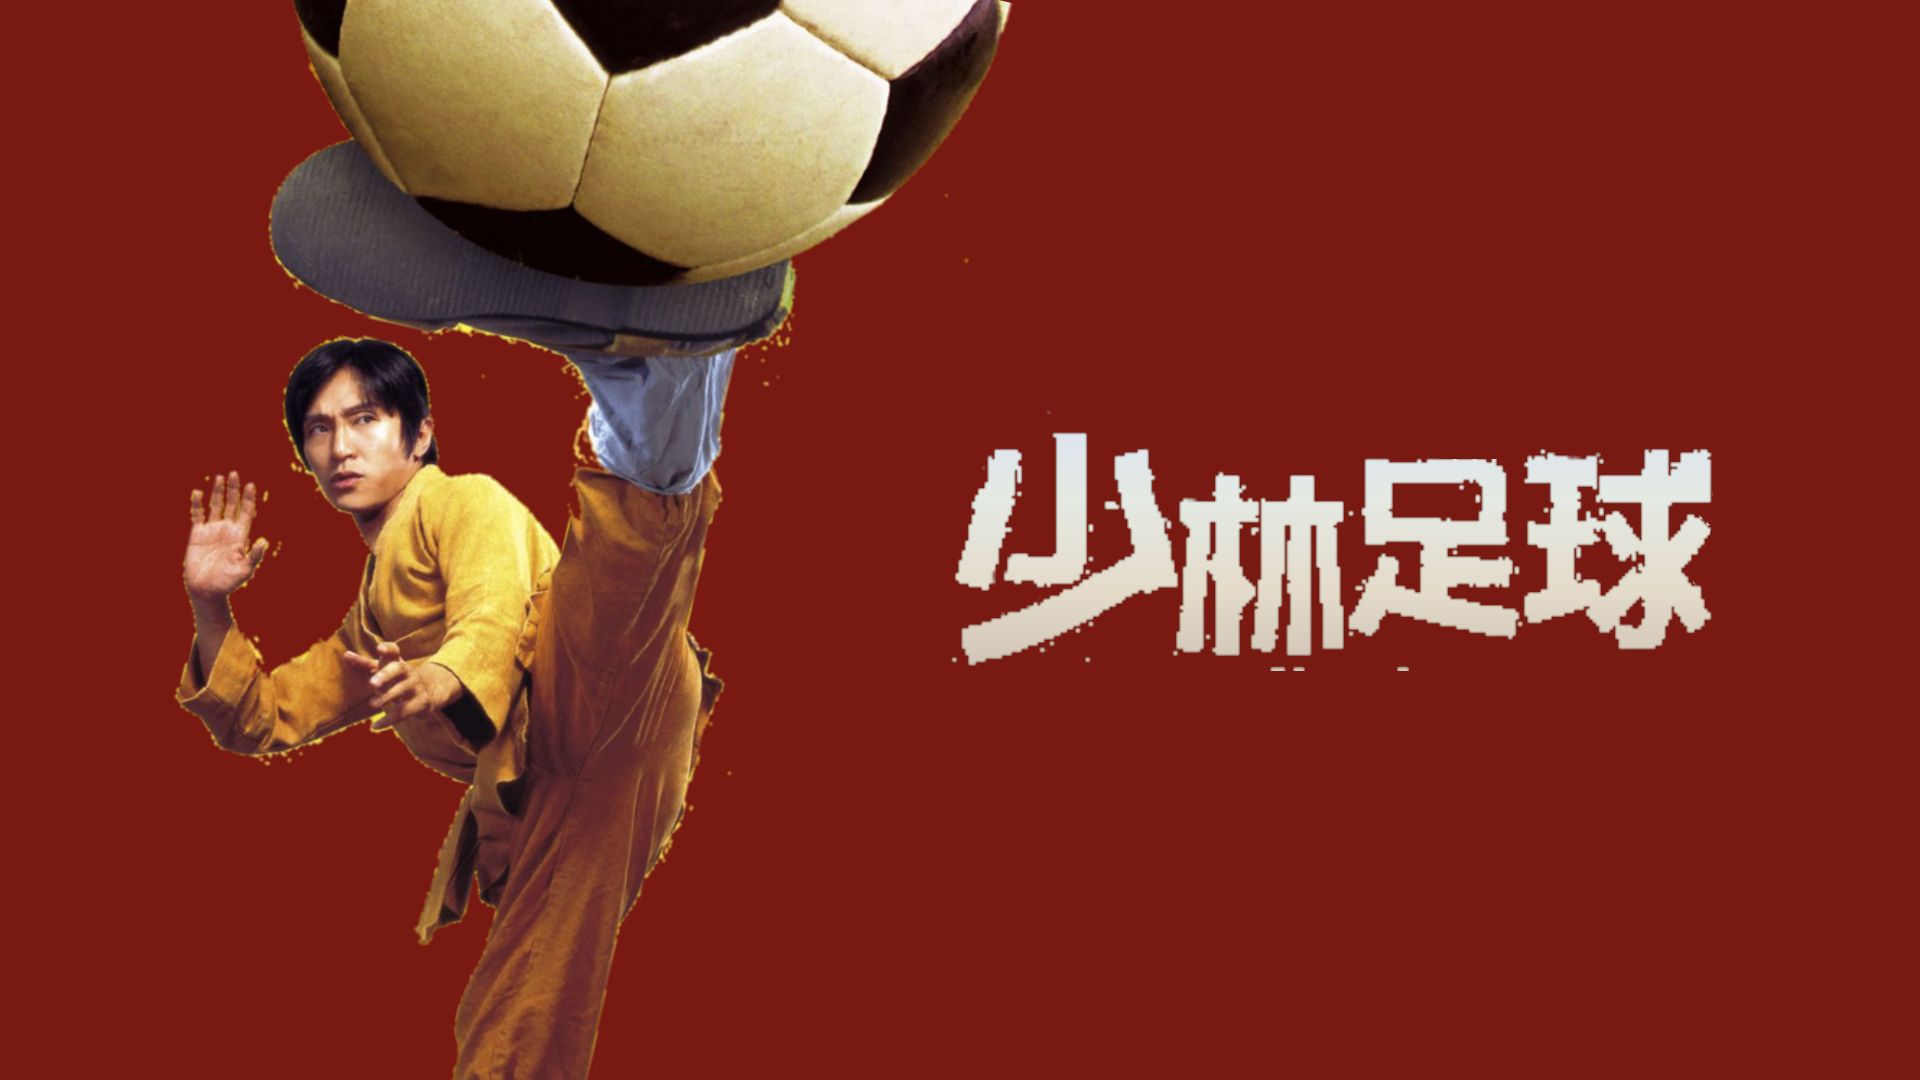 Shaolin Soccer wallpaper by aXisDVA on DeviantArt